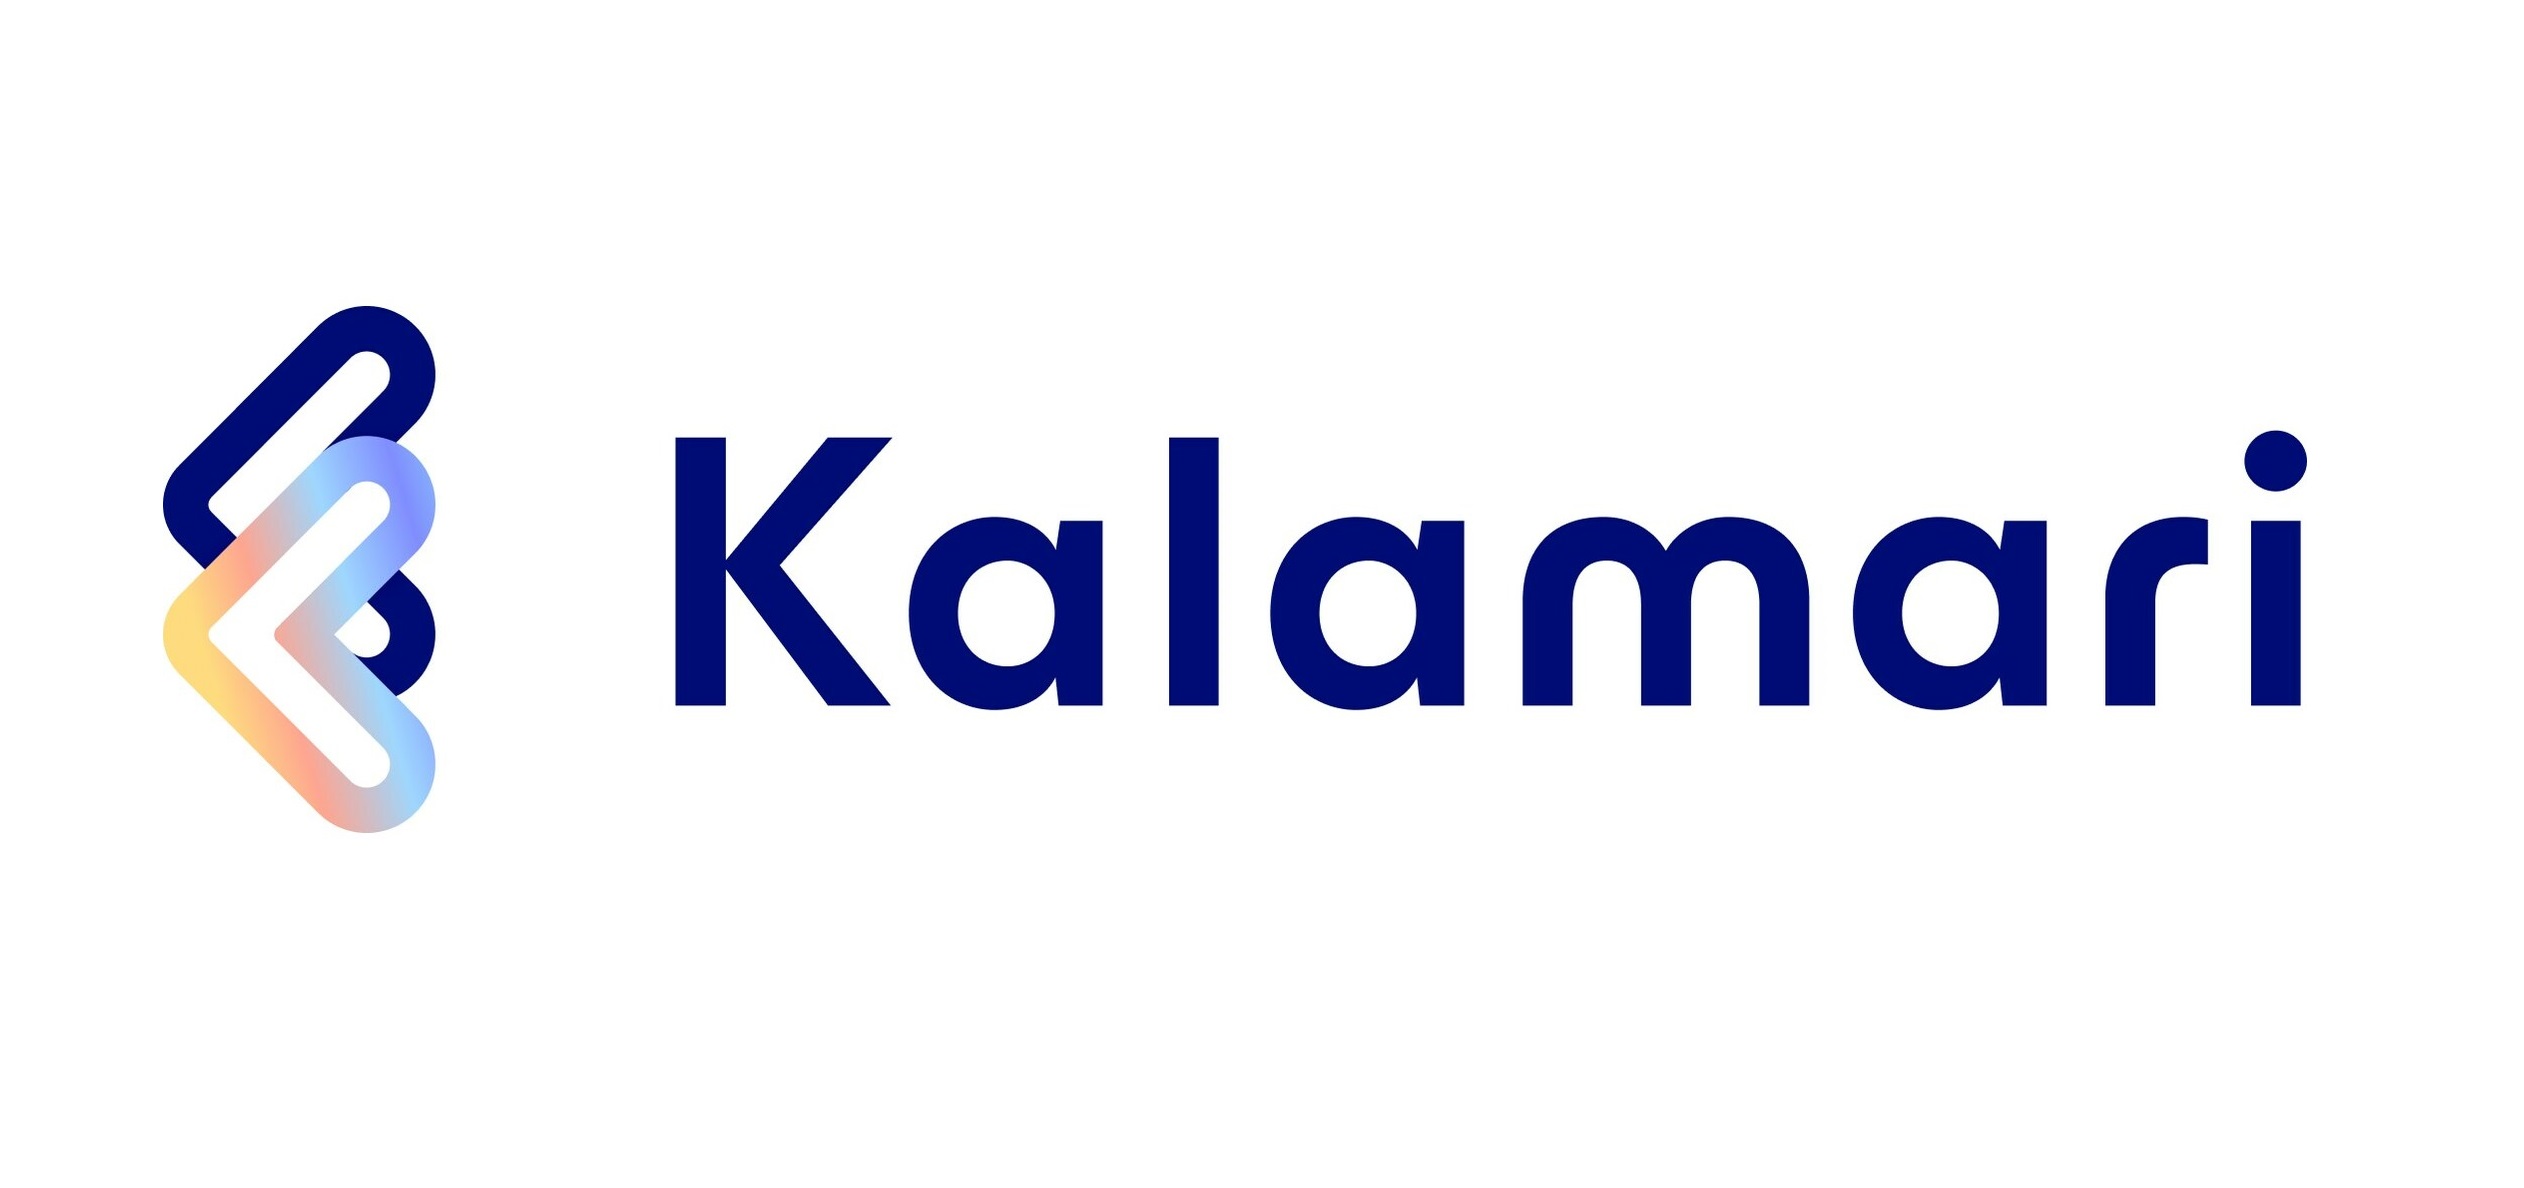 Kalamari